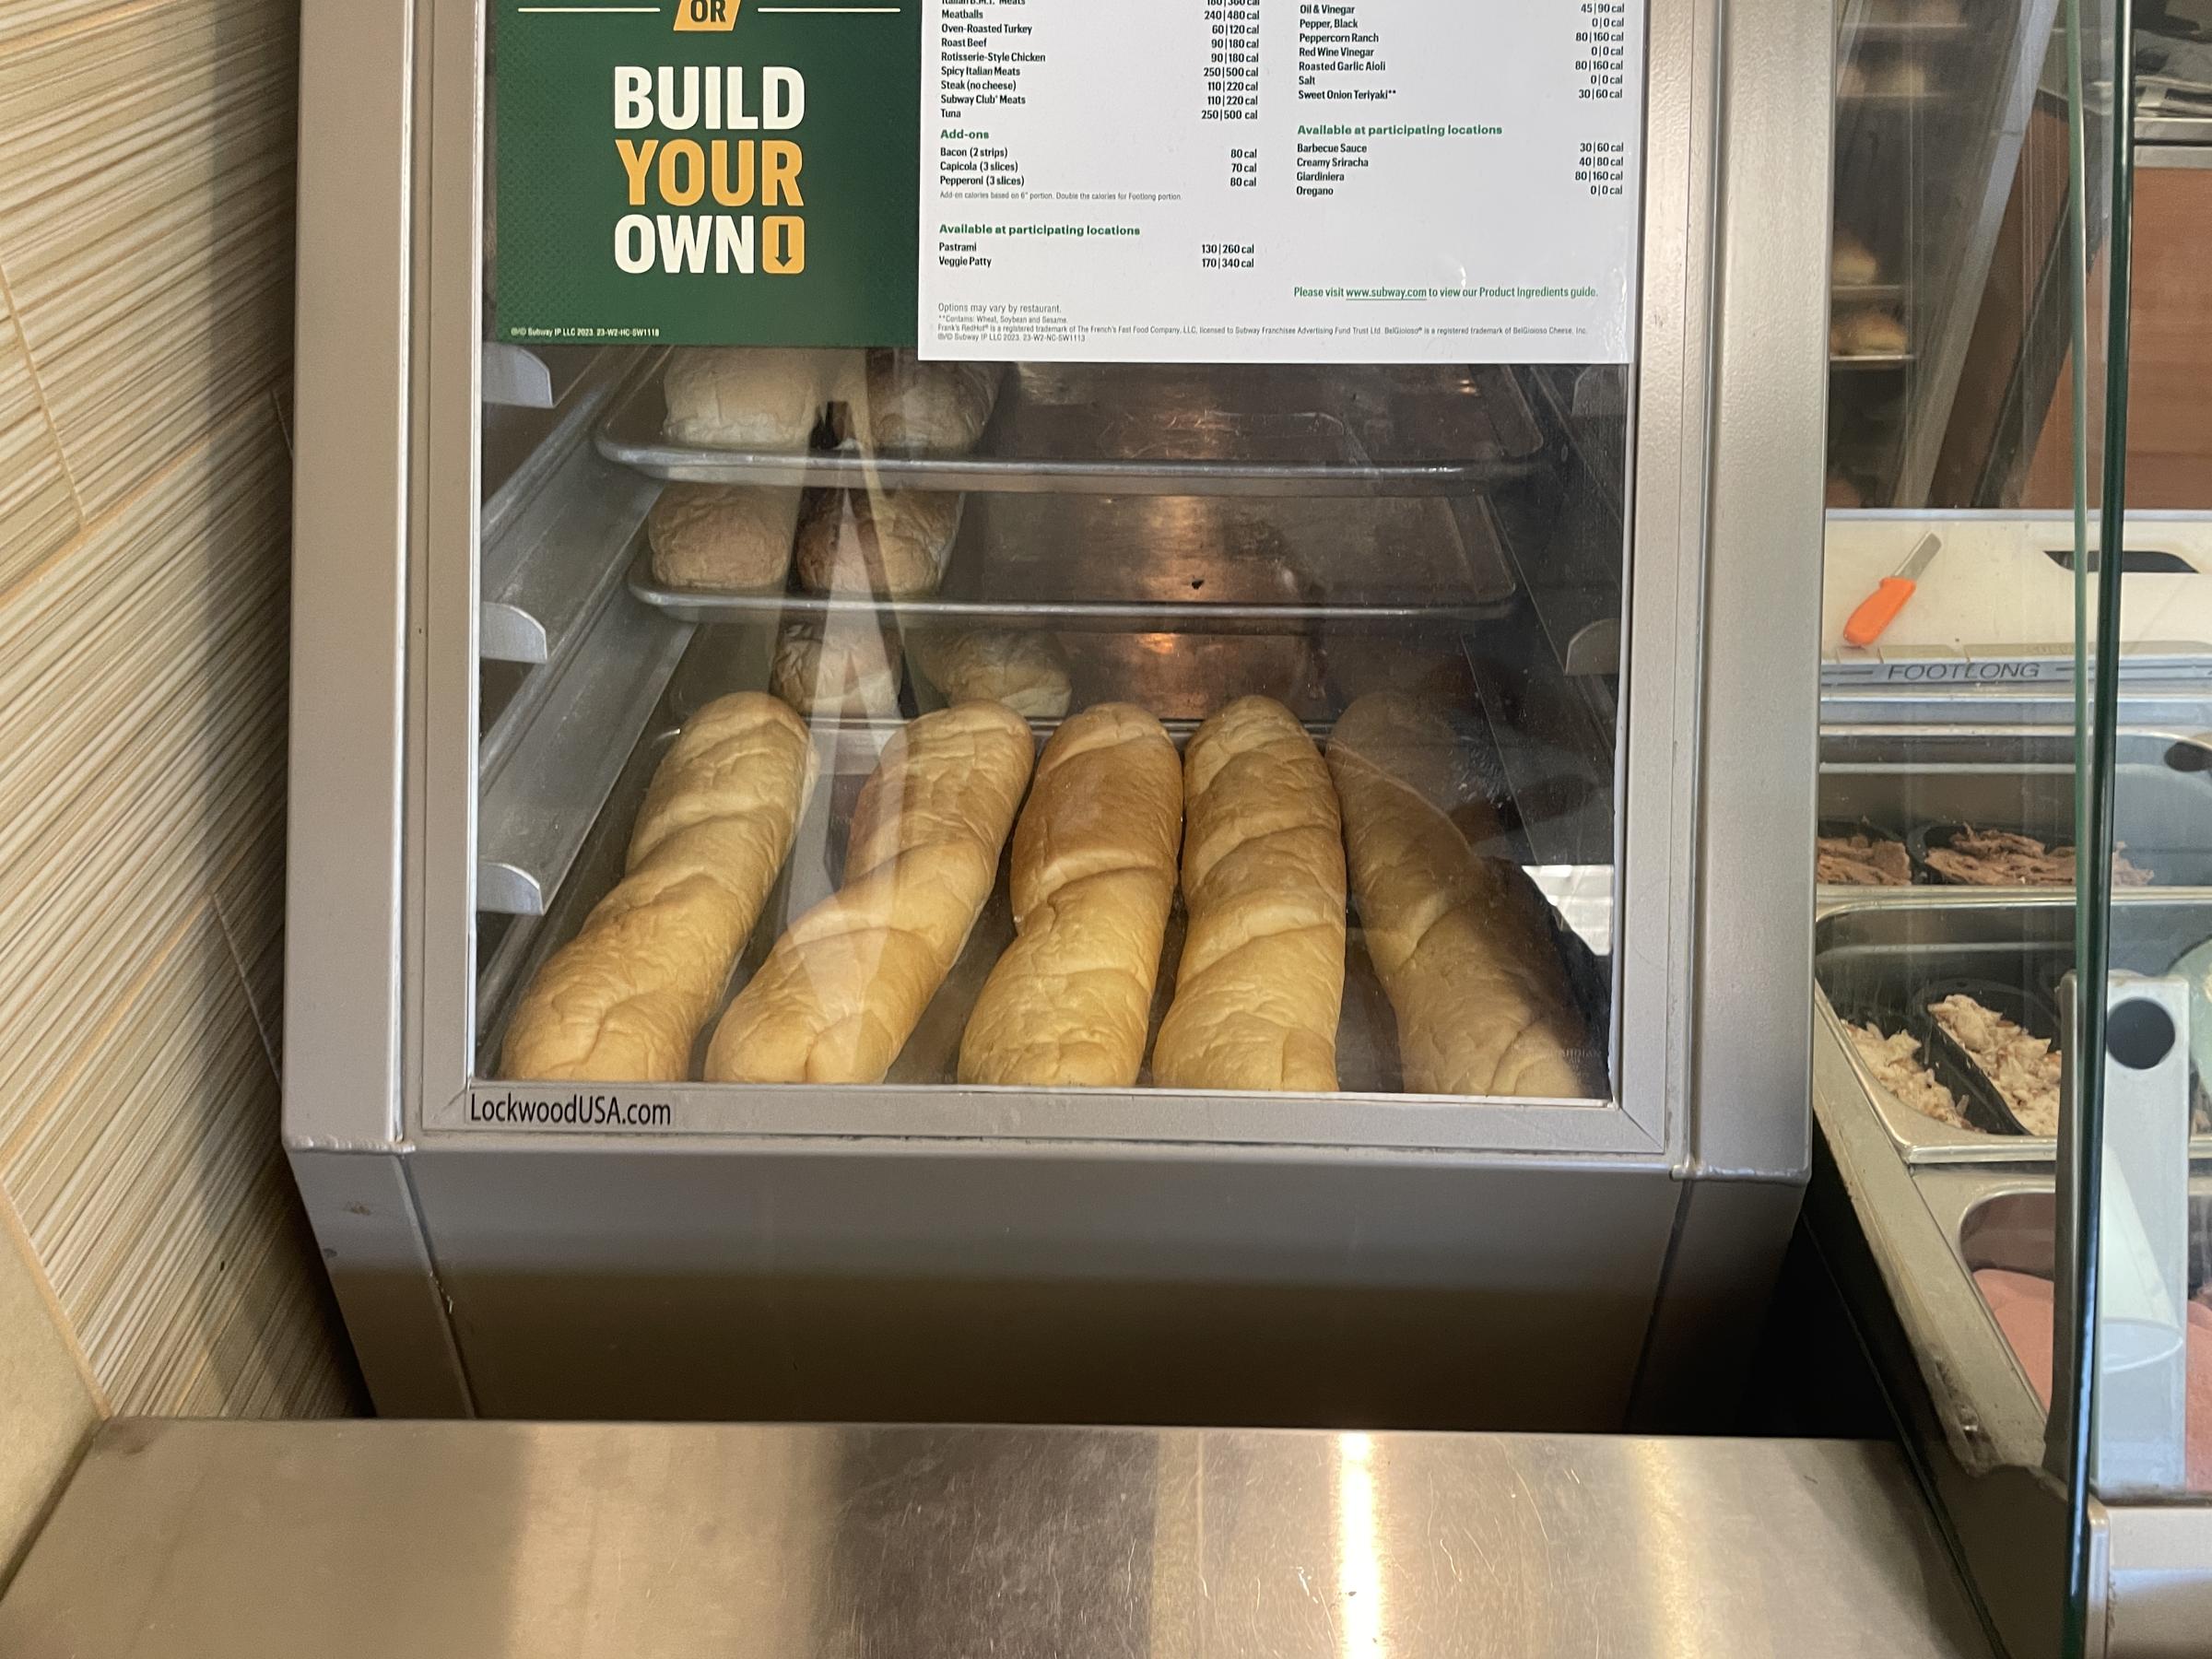 Subway bread